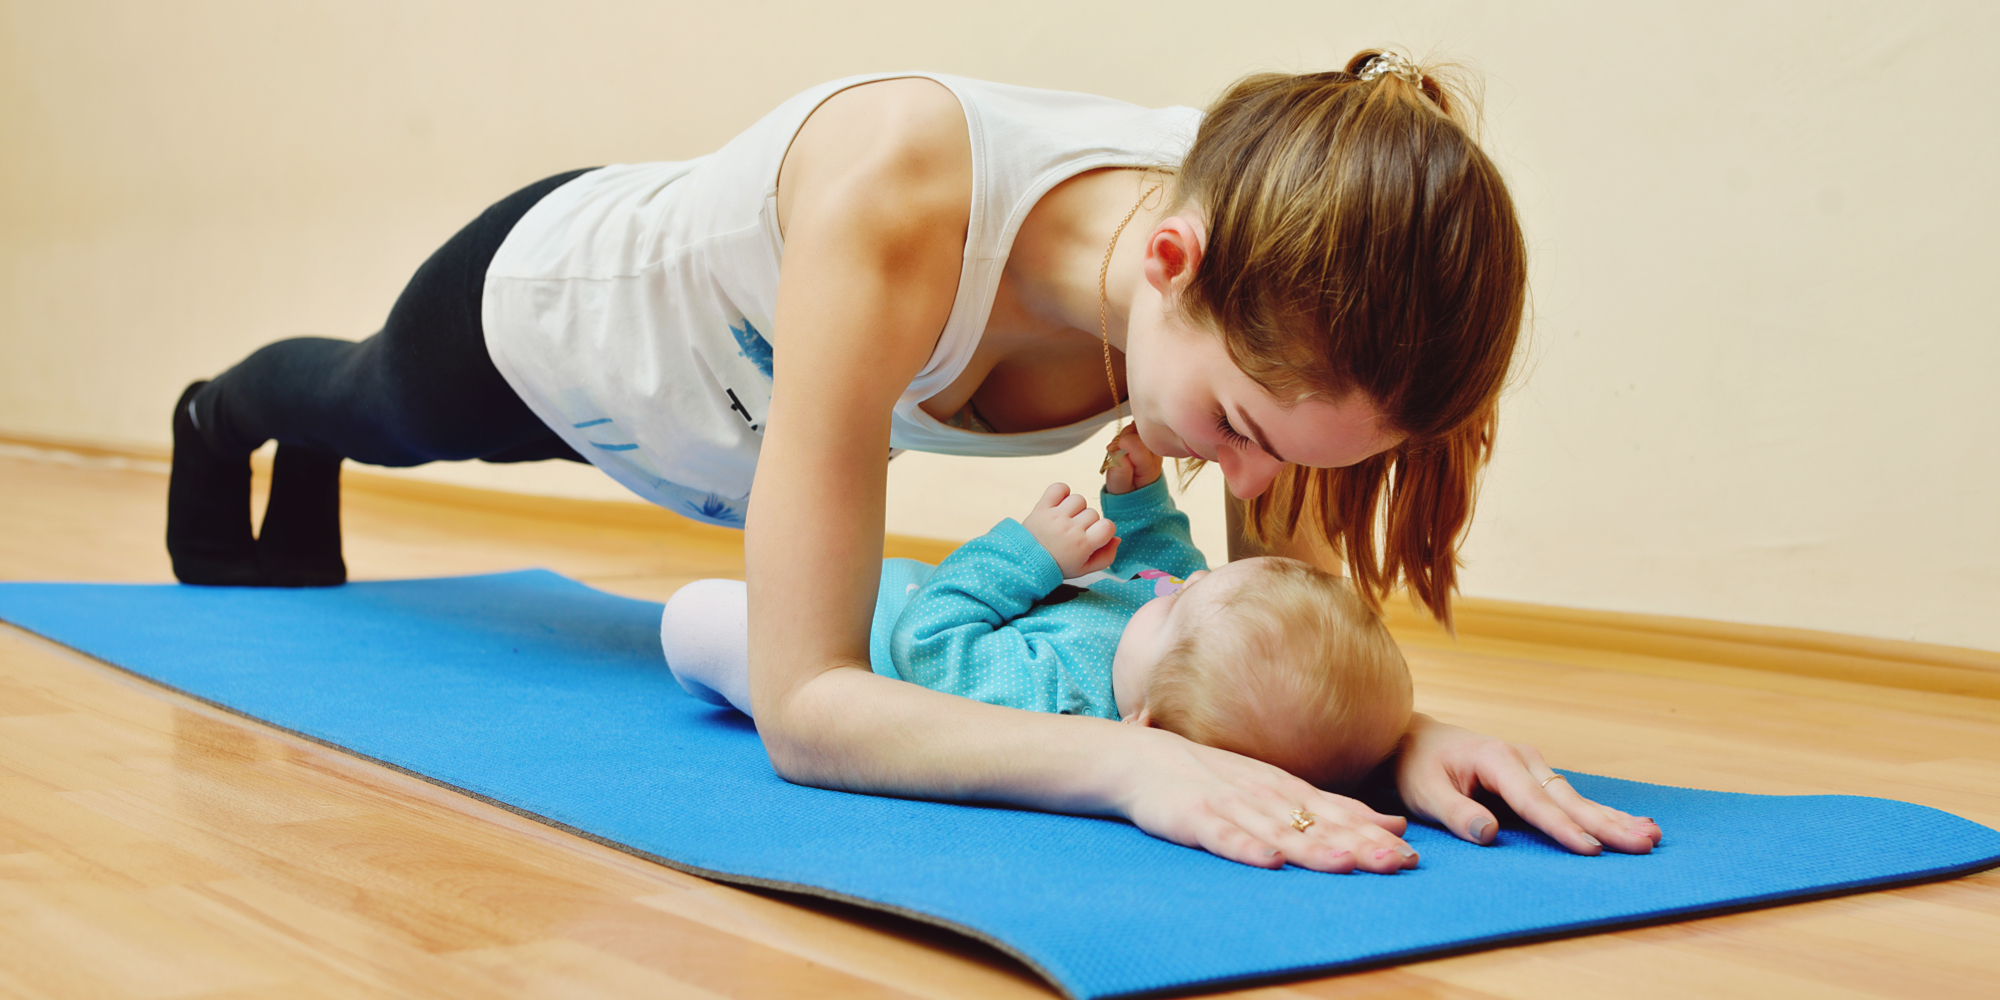 Efterfødselstræning med baby efterfødsel træning mor barn mortræning morfit